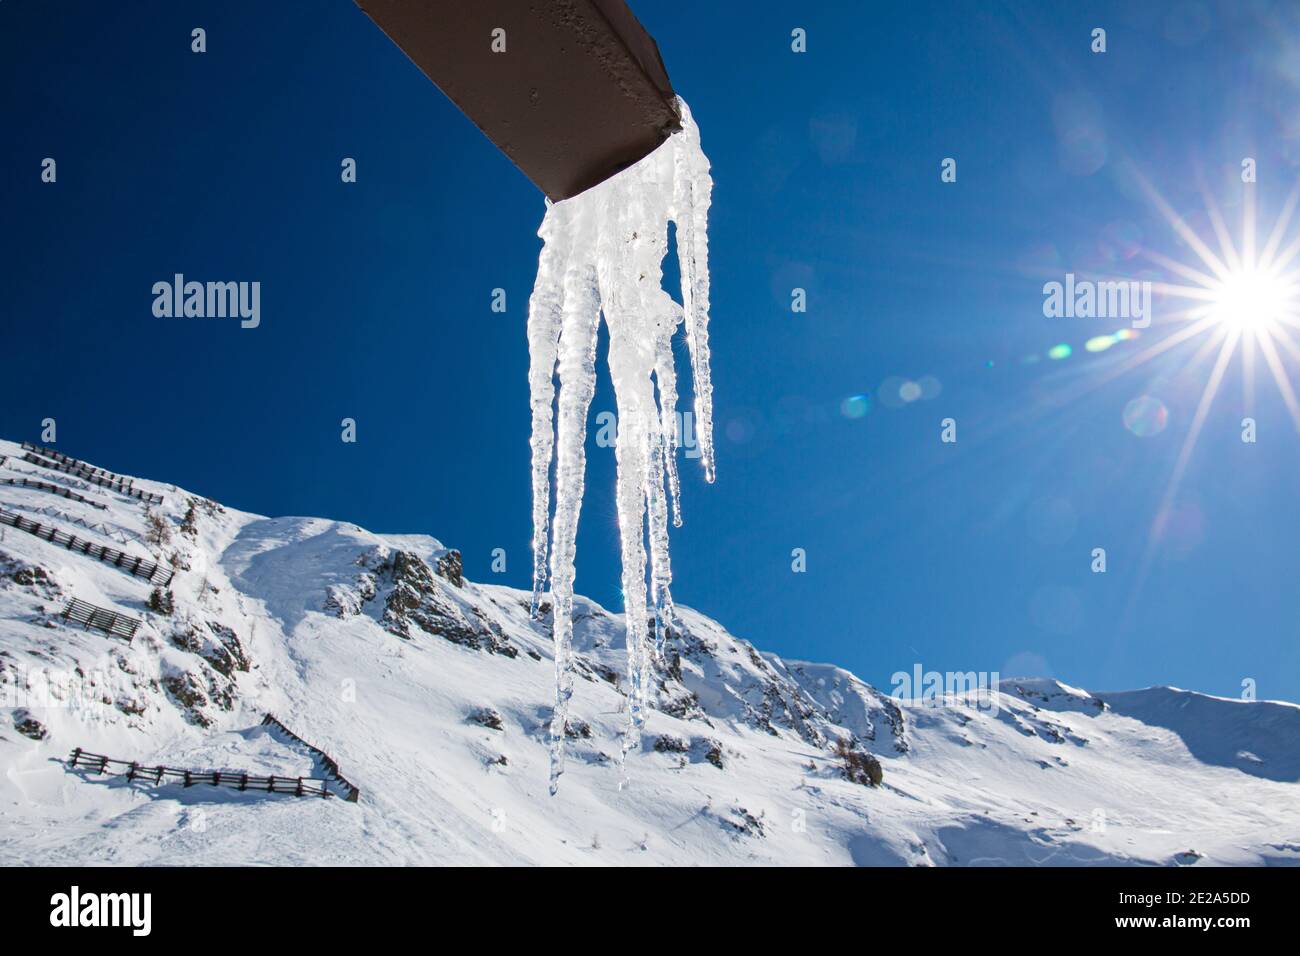 les stalactites de glace pendent d'une gouttière dans les montagnes, dans le ciel bleu, le soleil brille avec ses rayons. concept sur l'âge de glace et les époques climatiques. neige. Banque D'Images